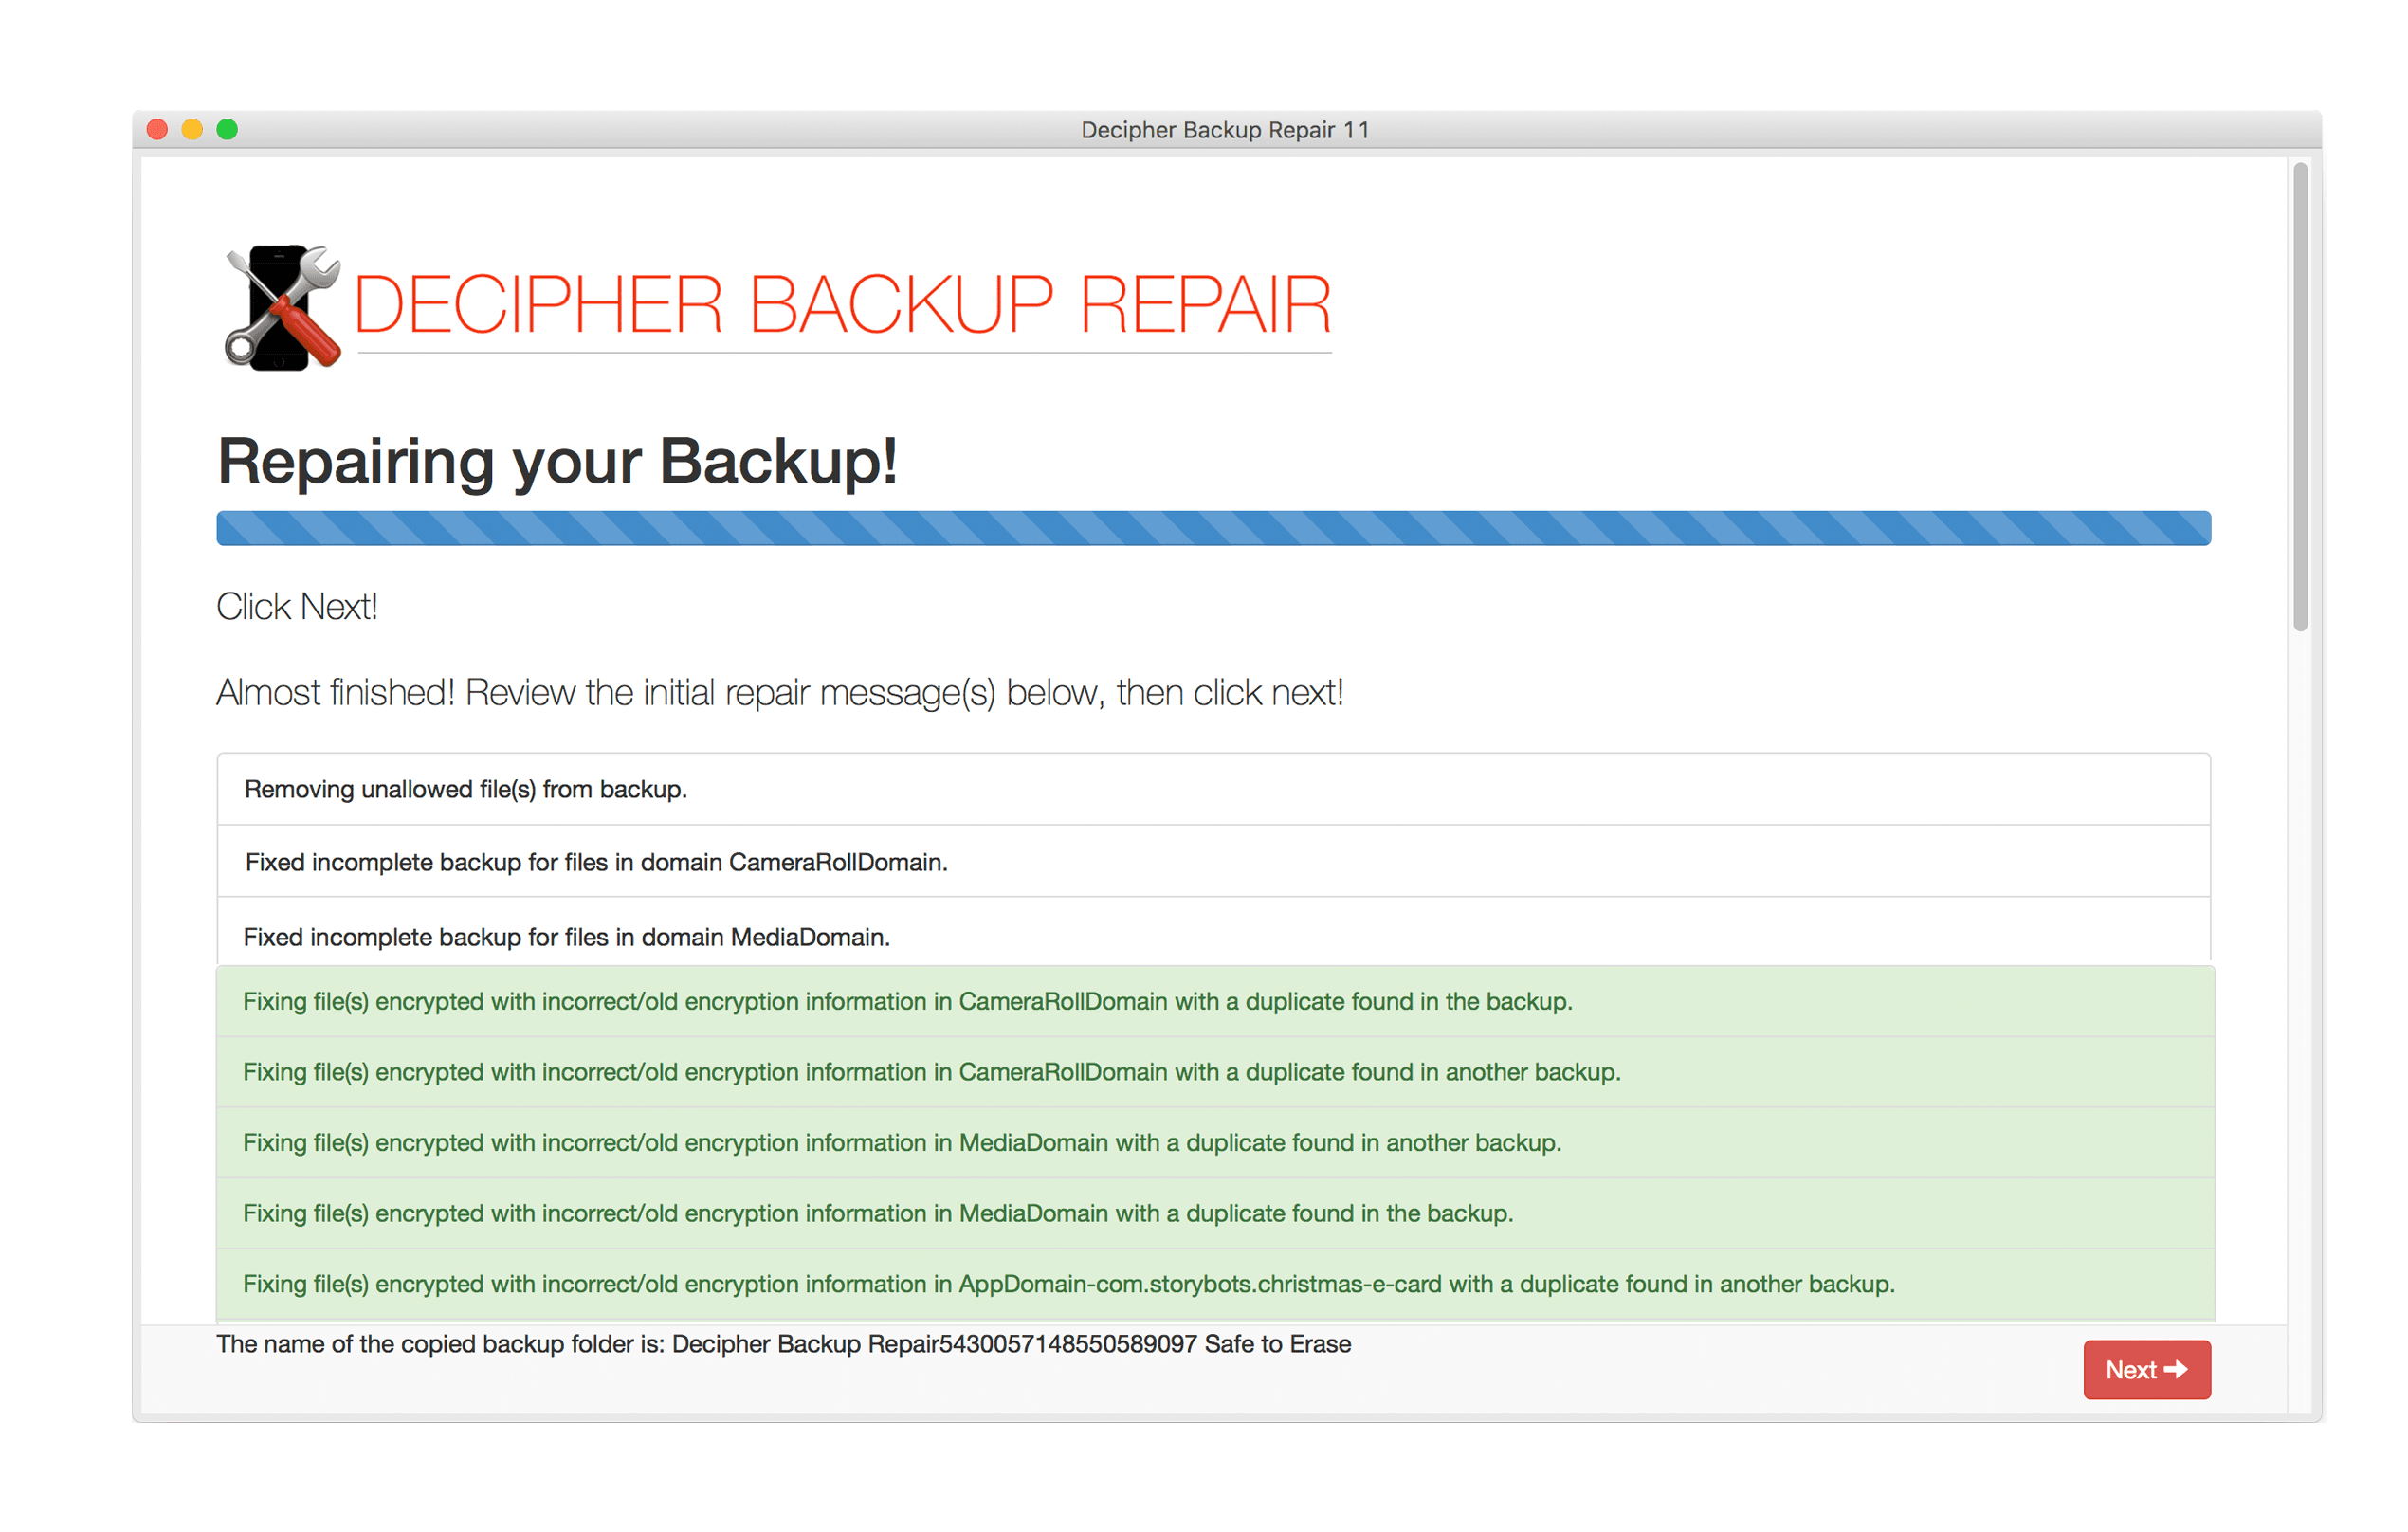 decipher backup repair free trial mac